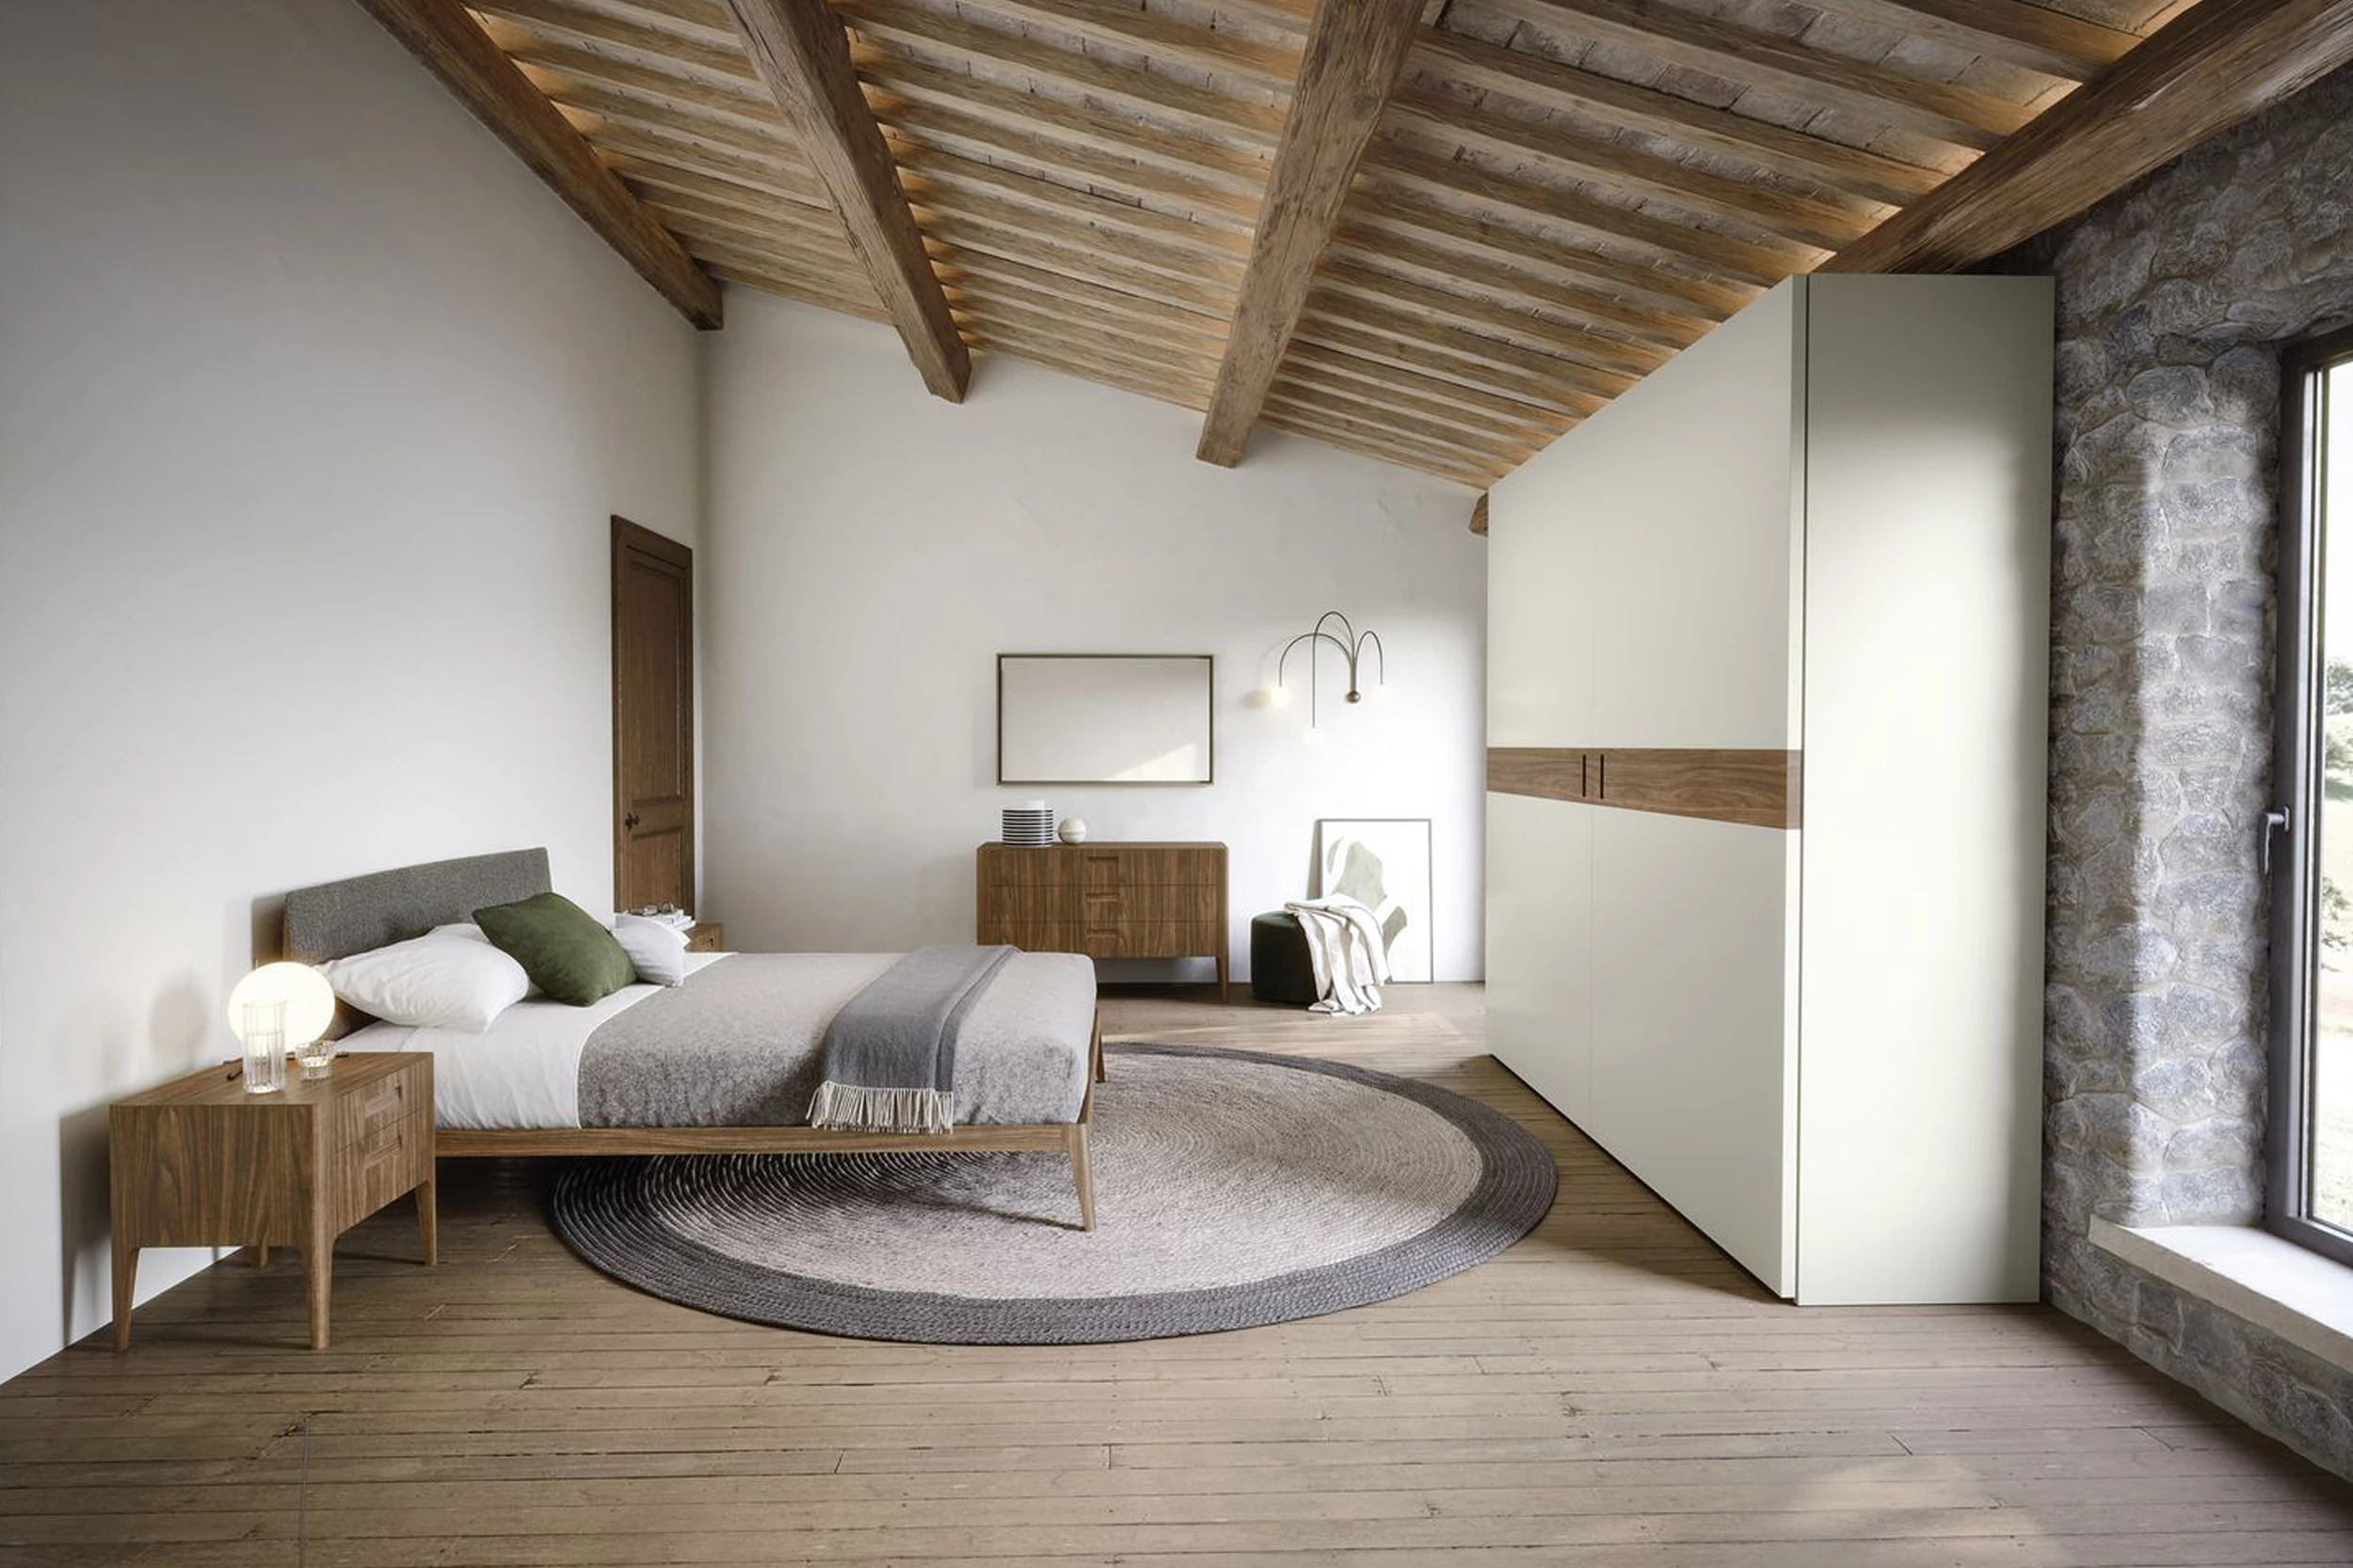 Camera da letto 3x4: come arredarla ottimizzando comfort e stile